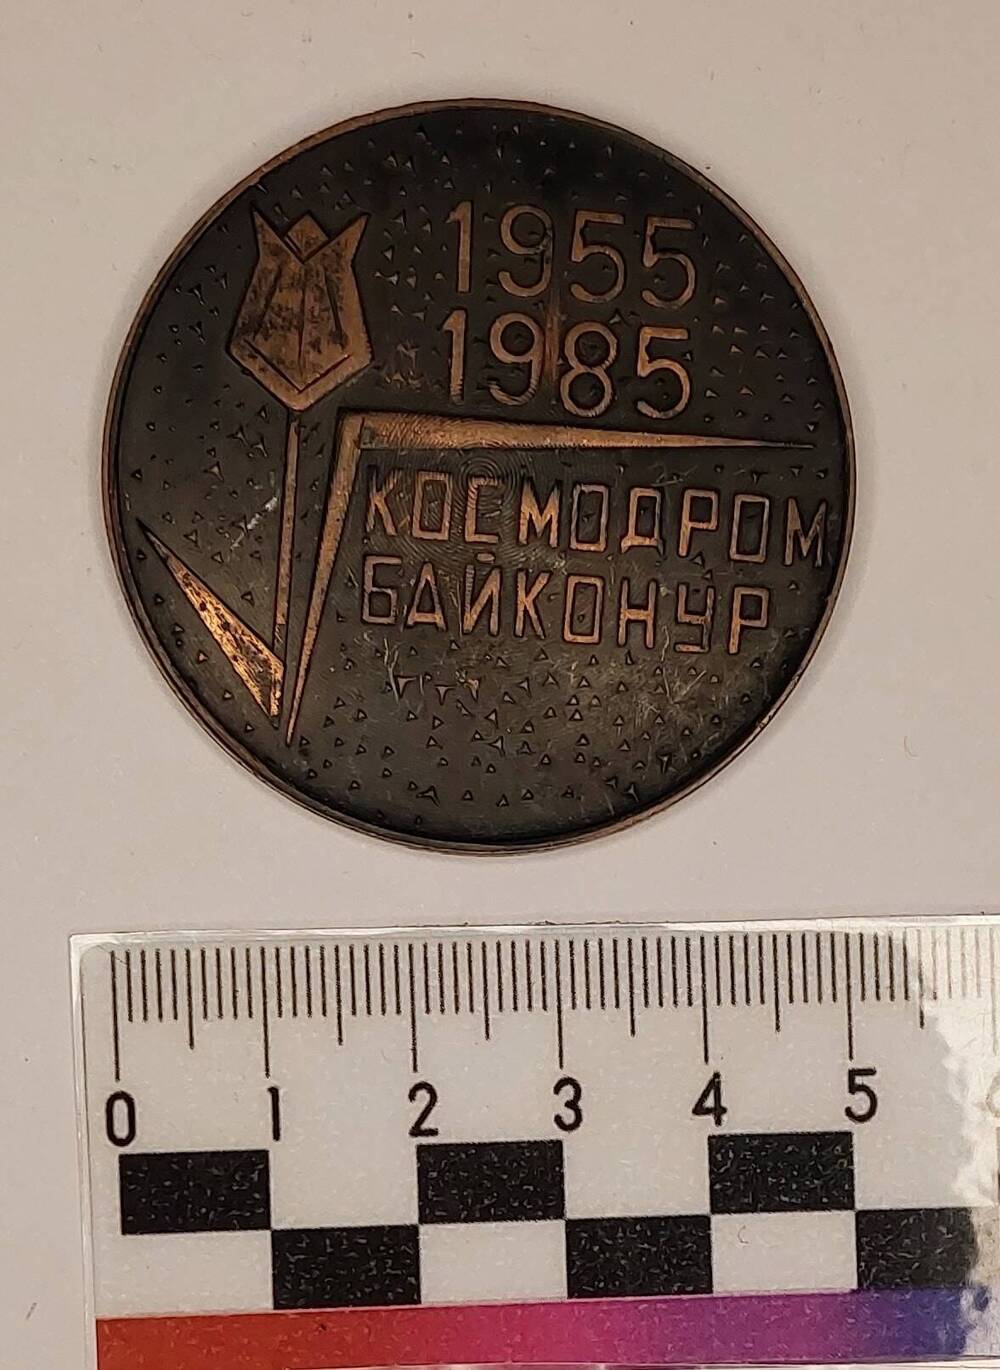 Медаль юбилейная «30 лет космодрому Байконур», Шонина Г.С., 1985 г.